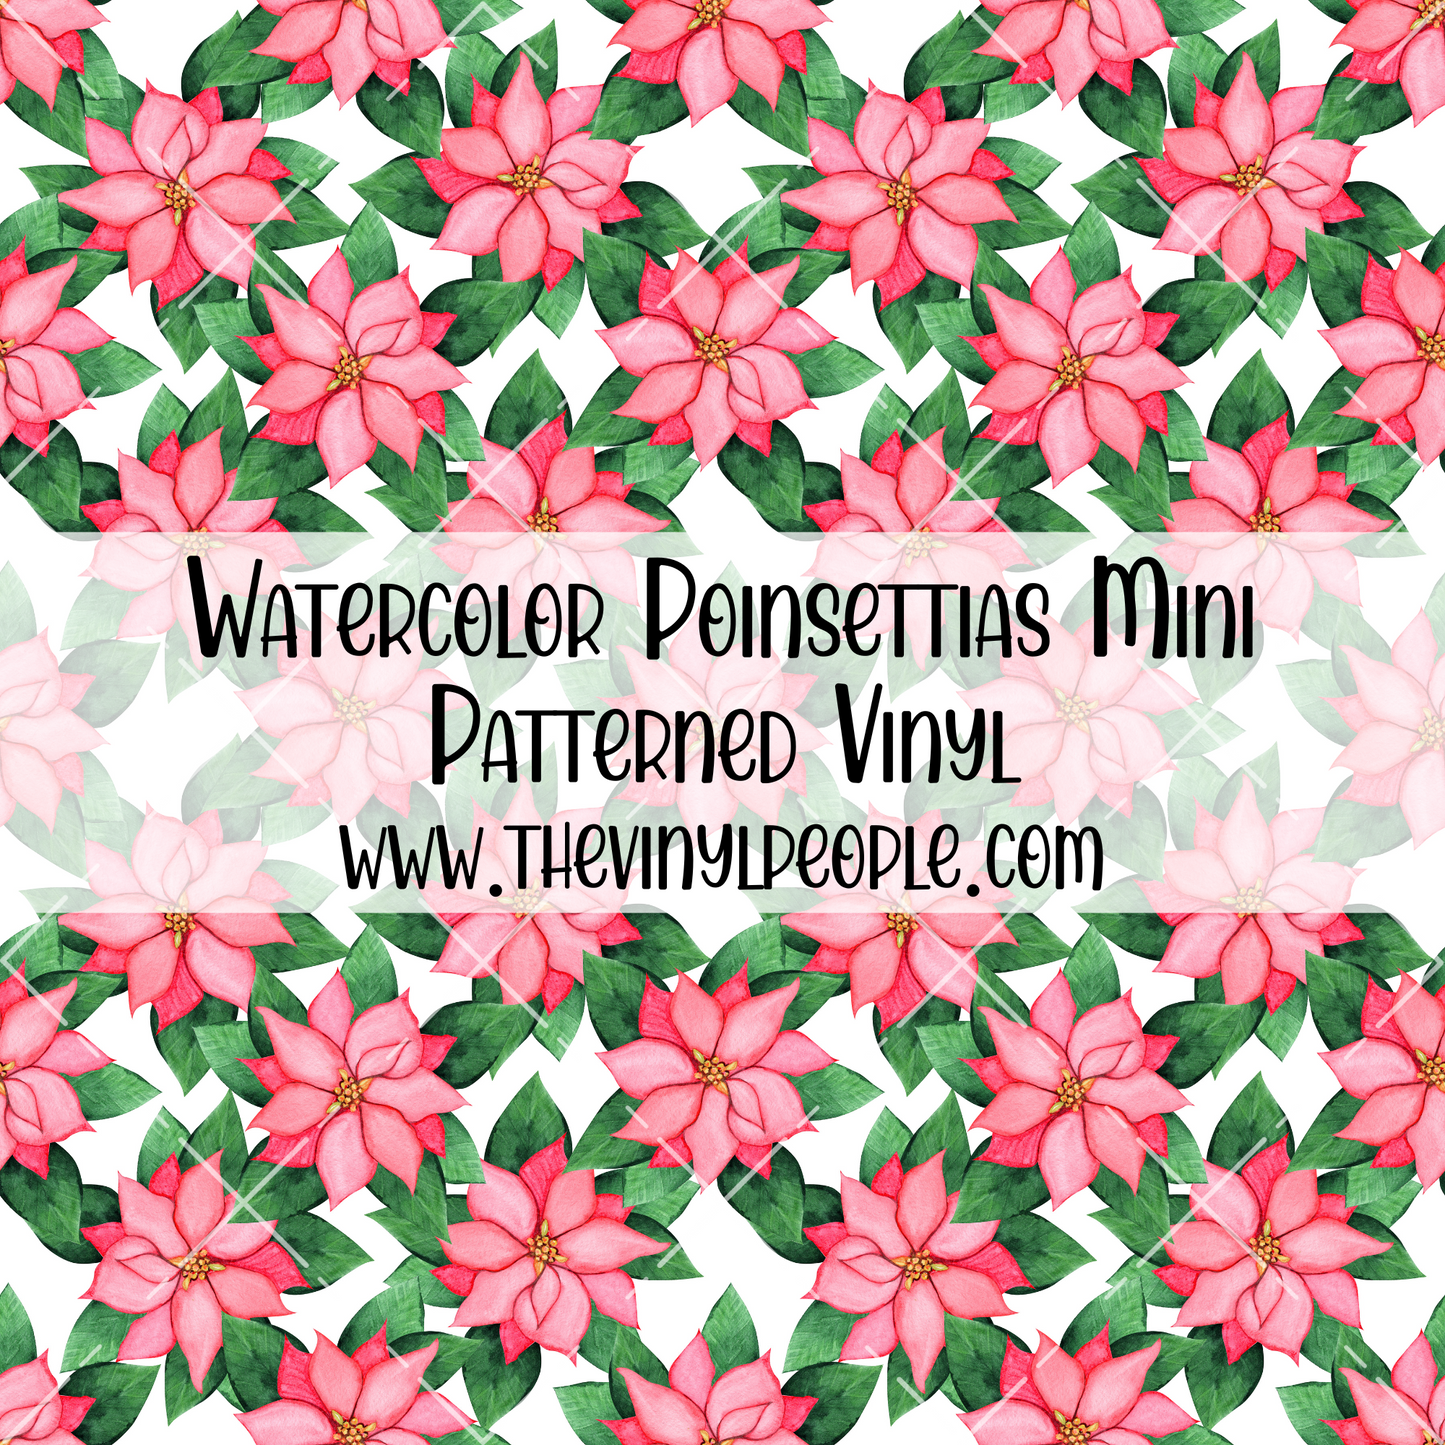 Watercolor Poinsettias Patterned Vinyl